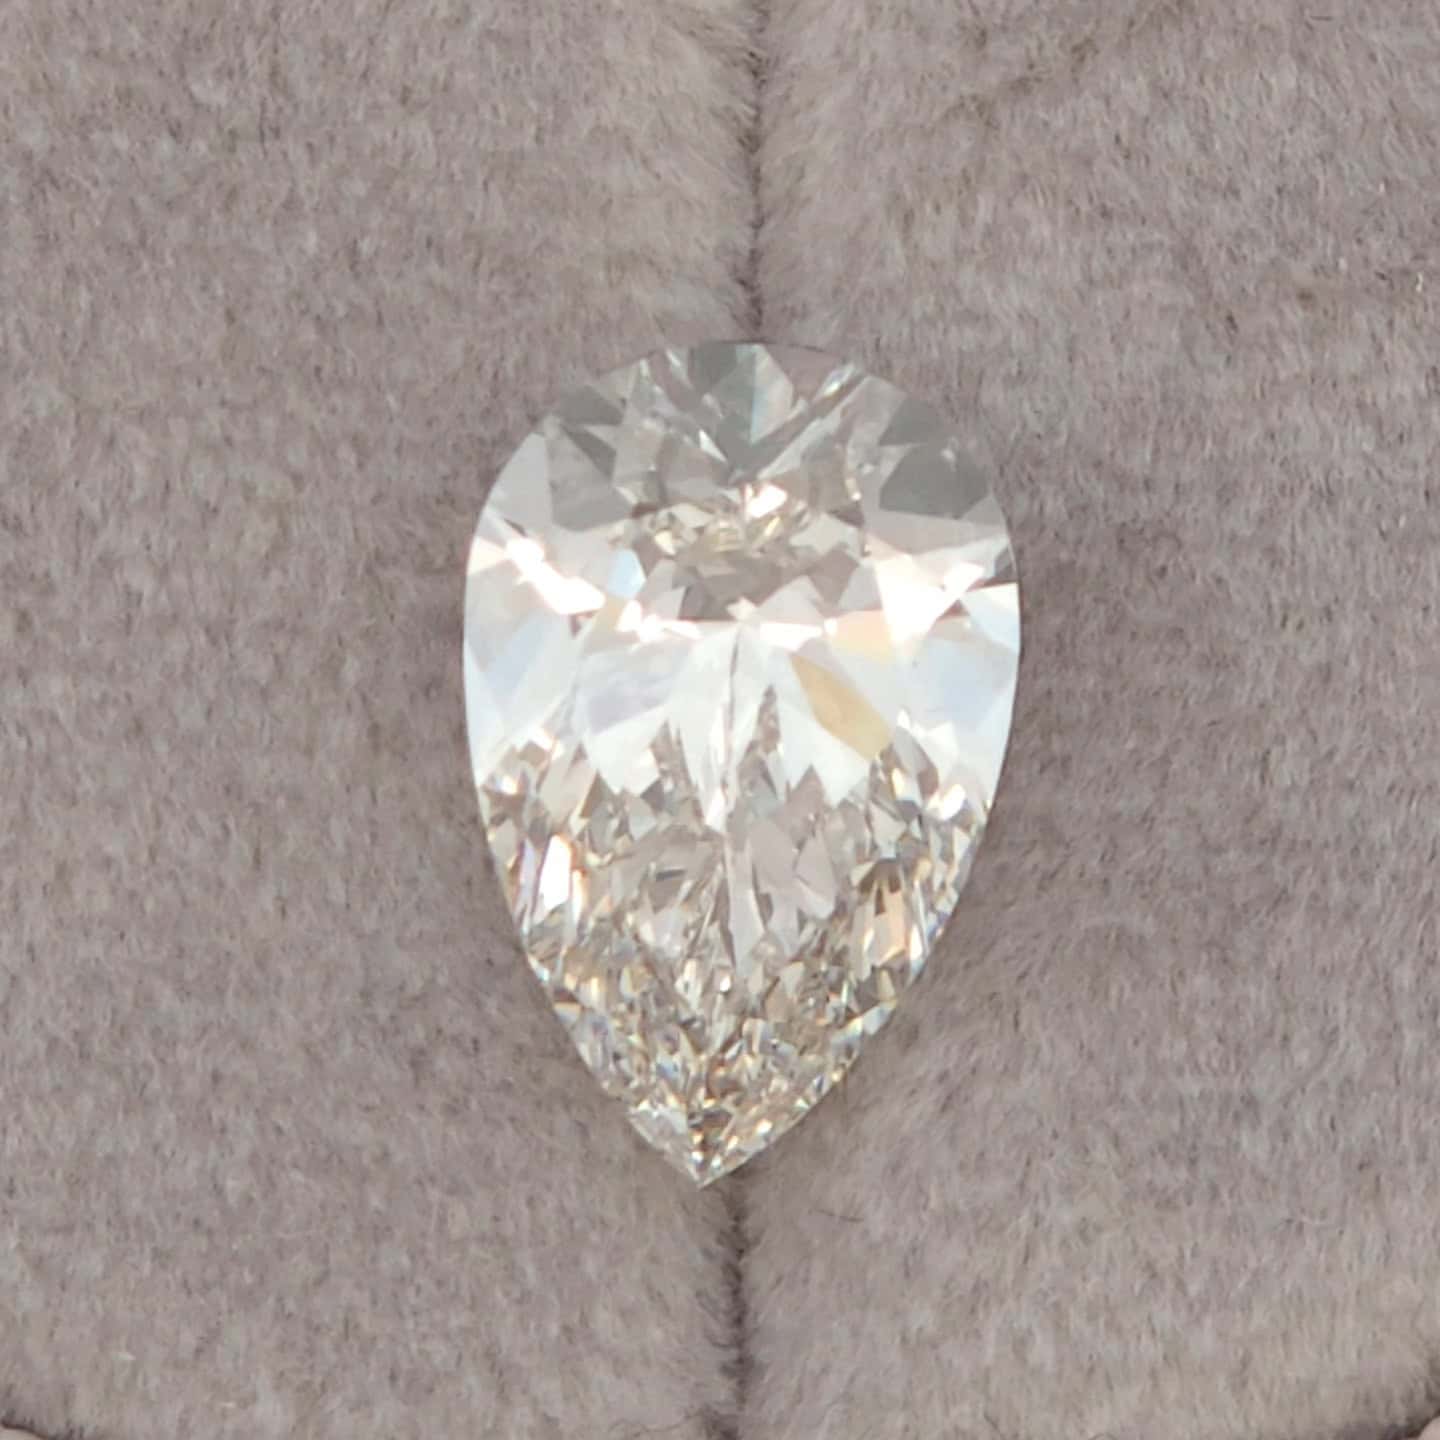 Lowest Price Eco Diamond - 2.07 ct Pear G-VVS2 IGI LG594344409 - Excellent symmetry, Excellent polish.